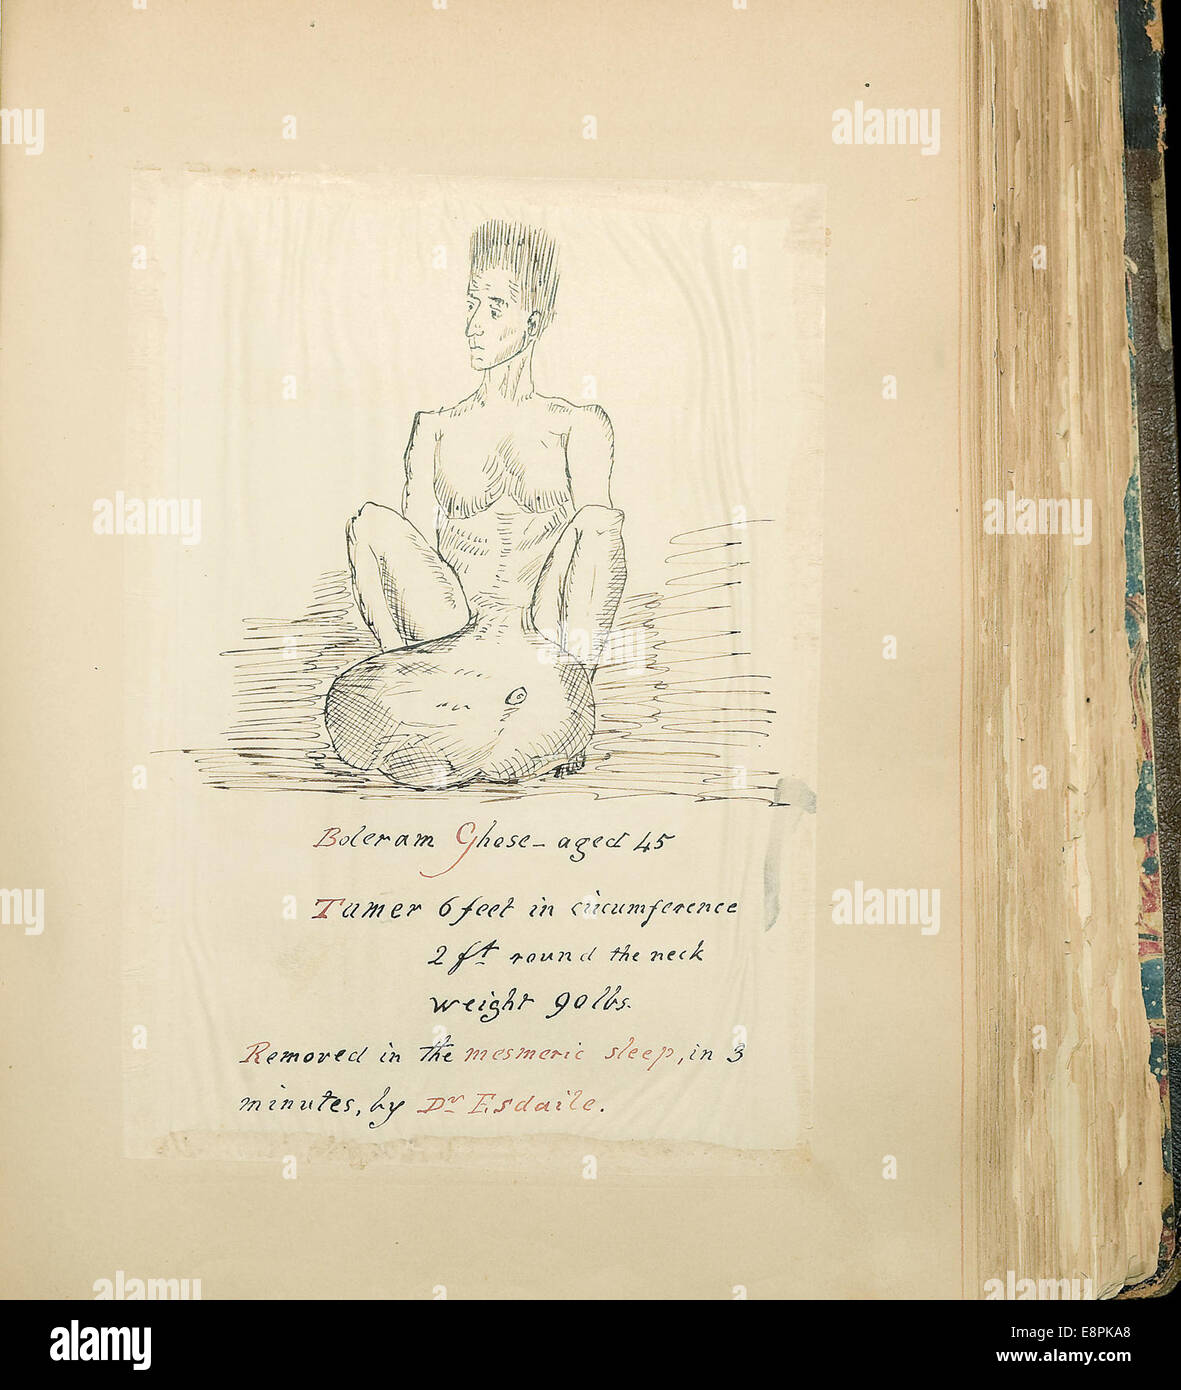 Apparaît dans : Théodose Purland, collection de documents sur magnétisme Image Description : Image d'un dessin d'un homme, nommé Bol Banque D'Images